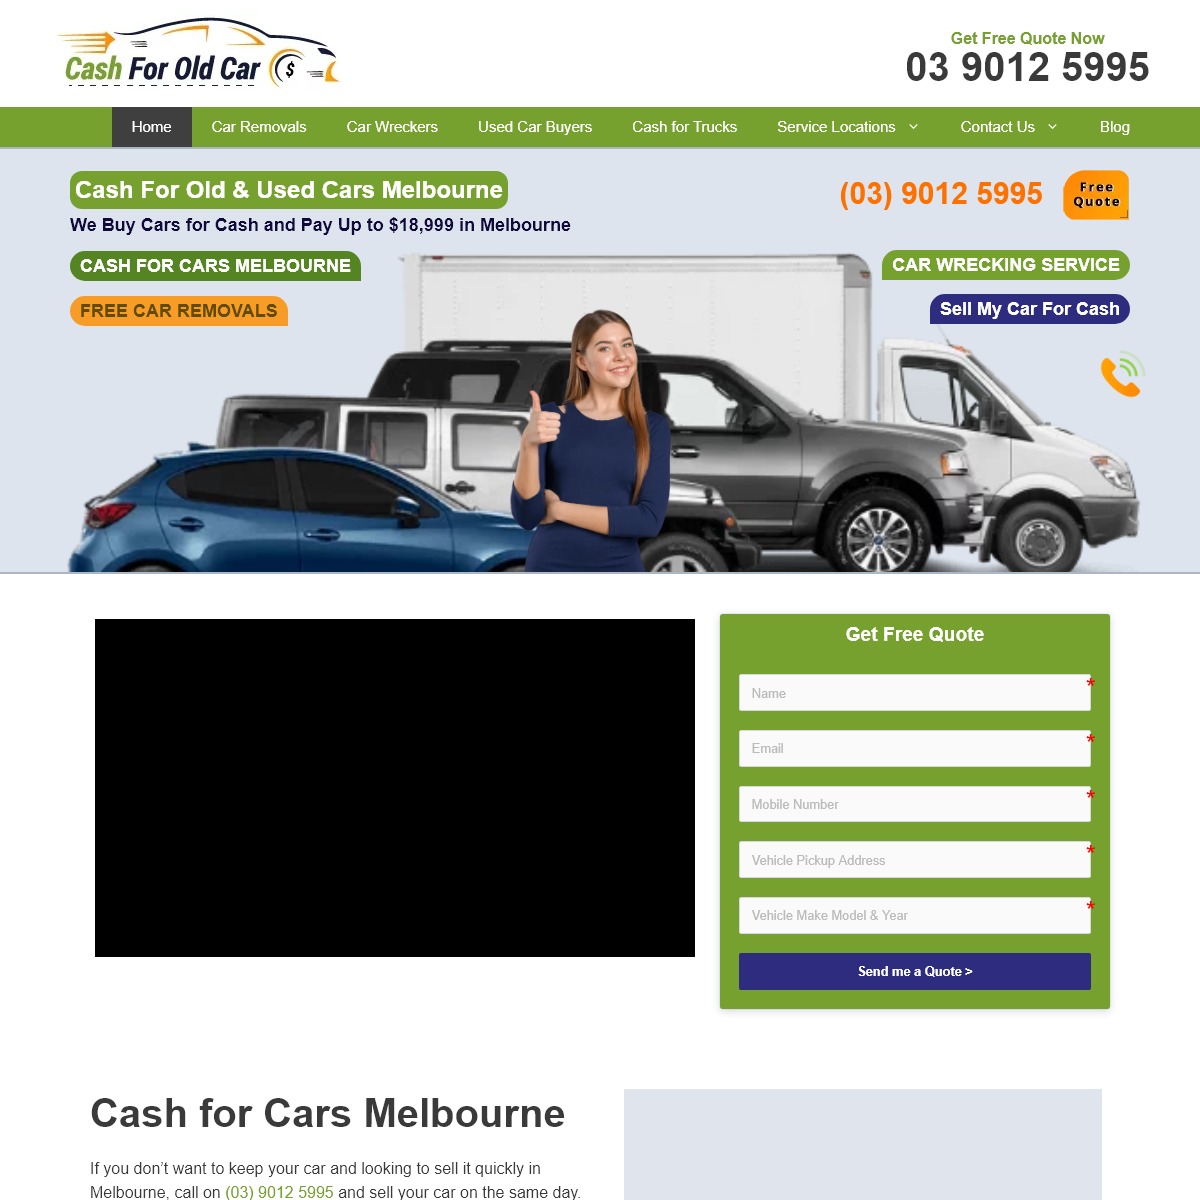 A complete backup of cash-for-old-car.com.au